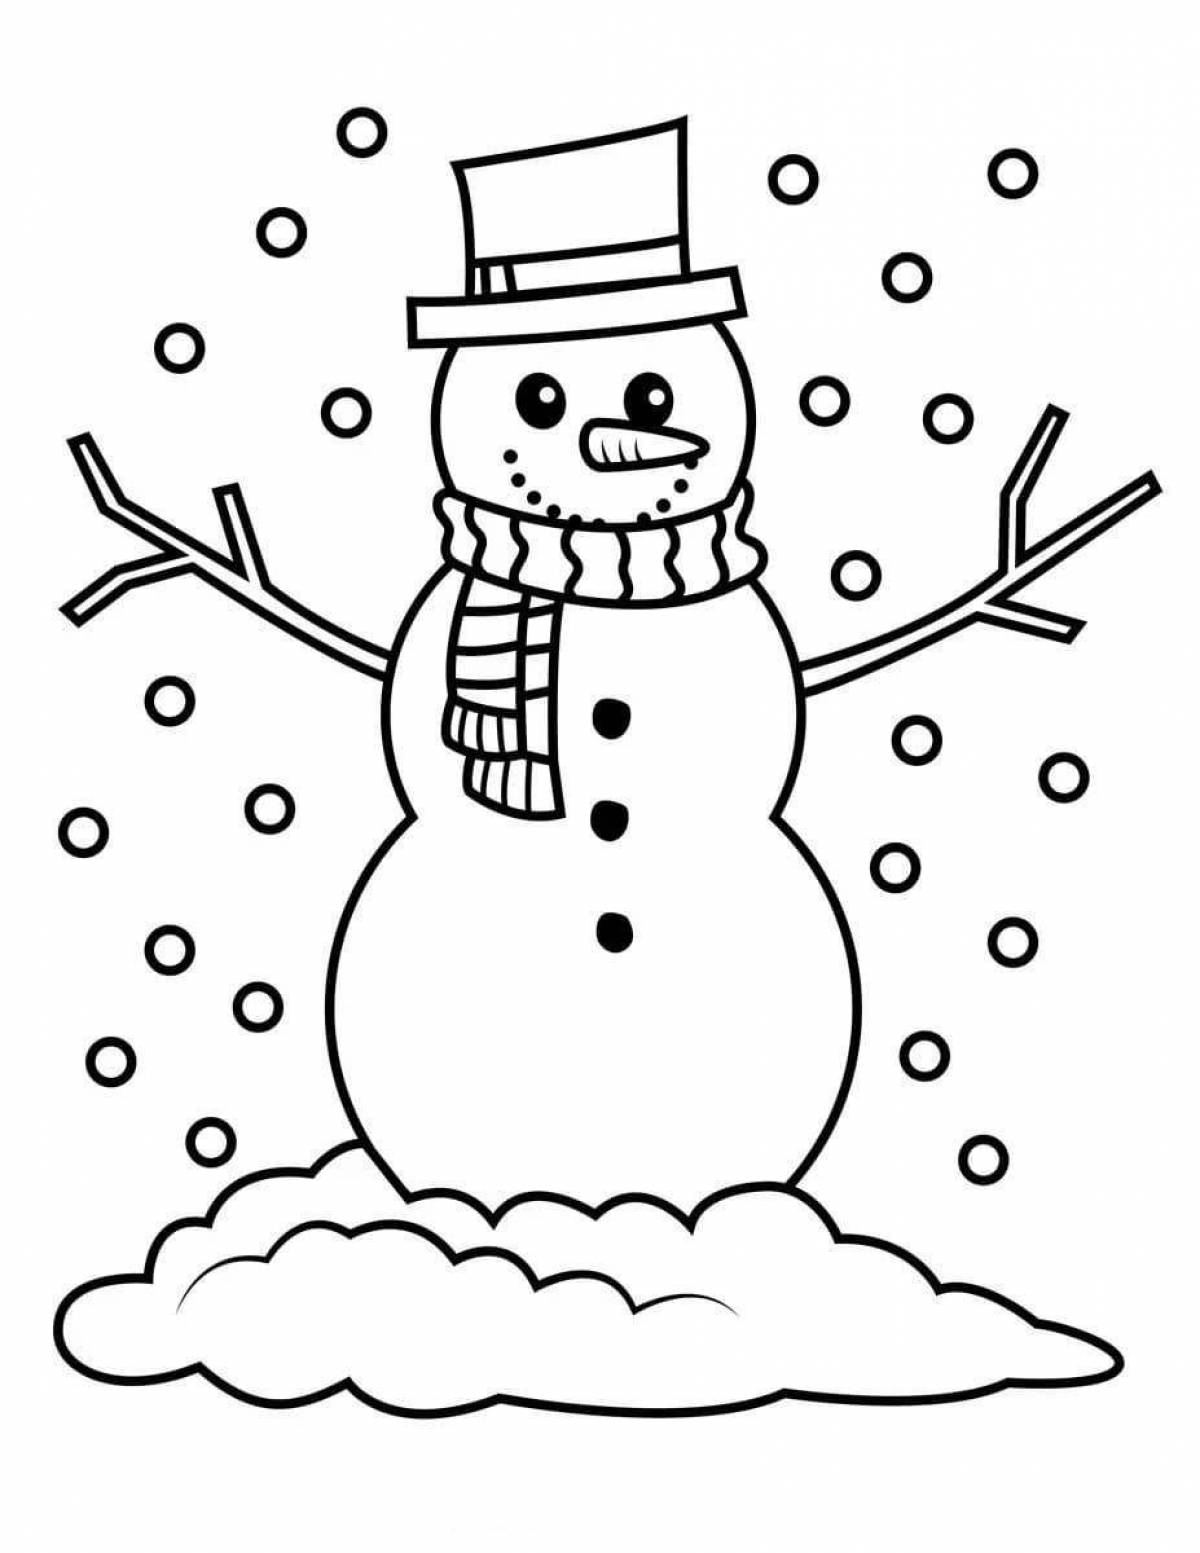 Анимированная страница раскраски снеговика